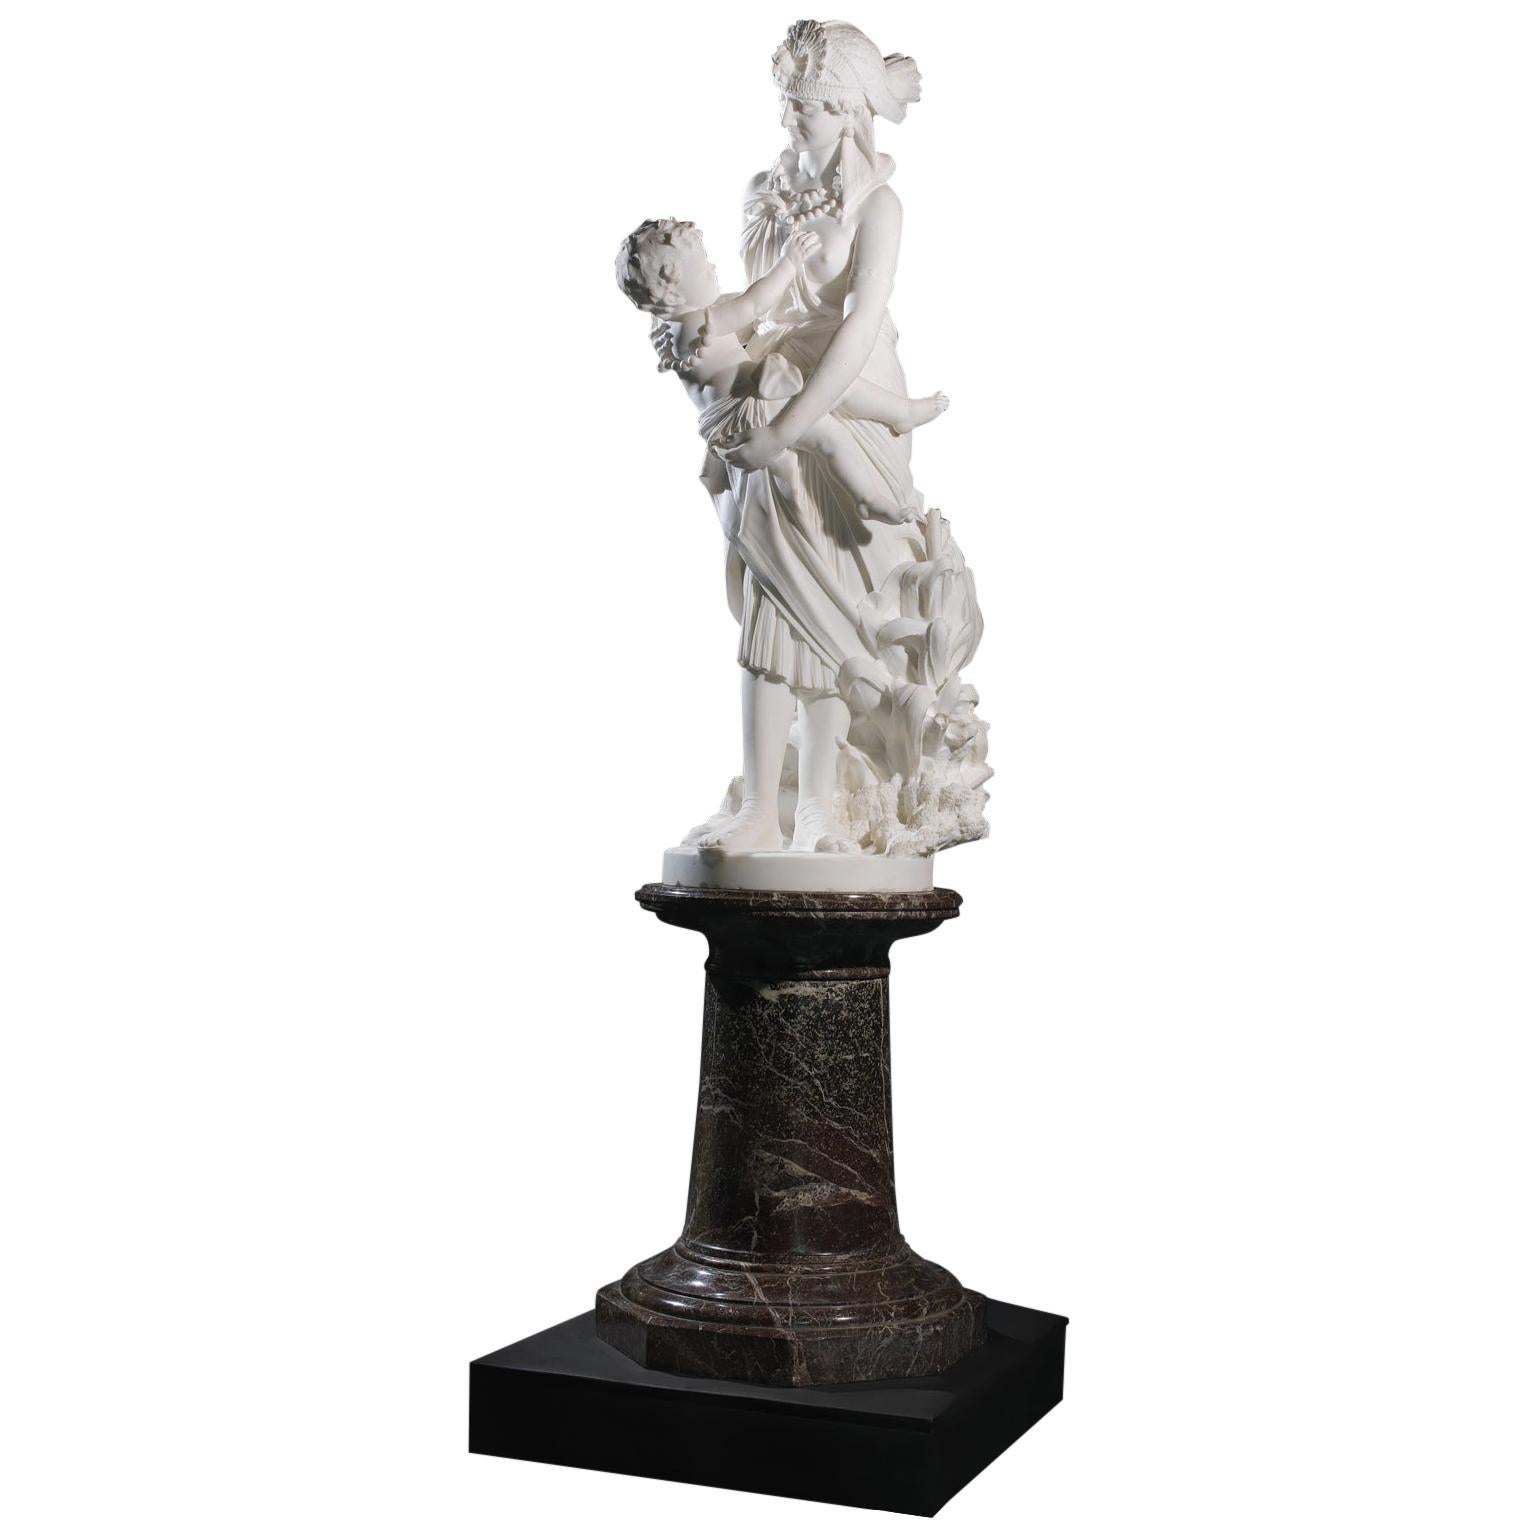 « La découverte de Moïse », groupe figuratif en marbre de Pietro Bazzanti, datant d'environ 1870